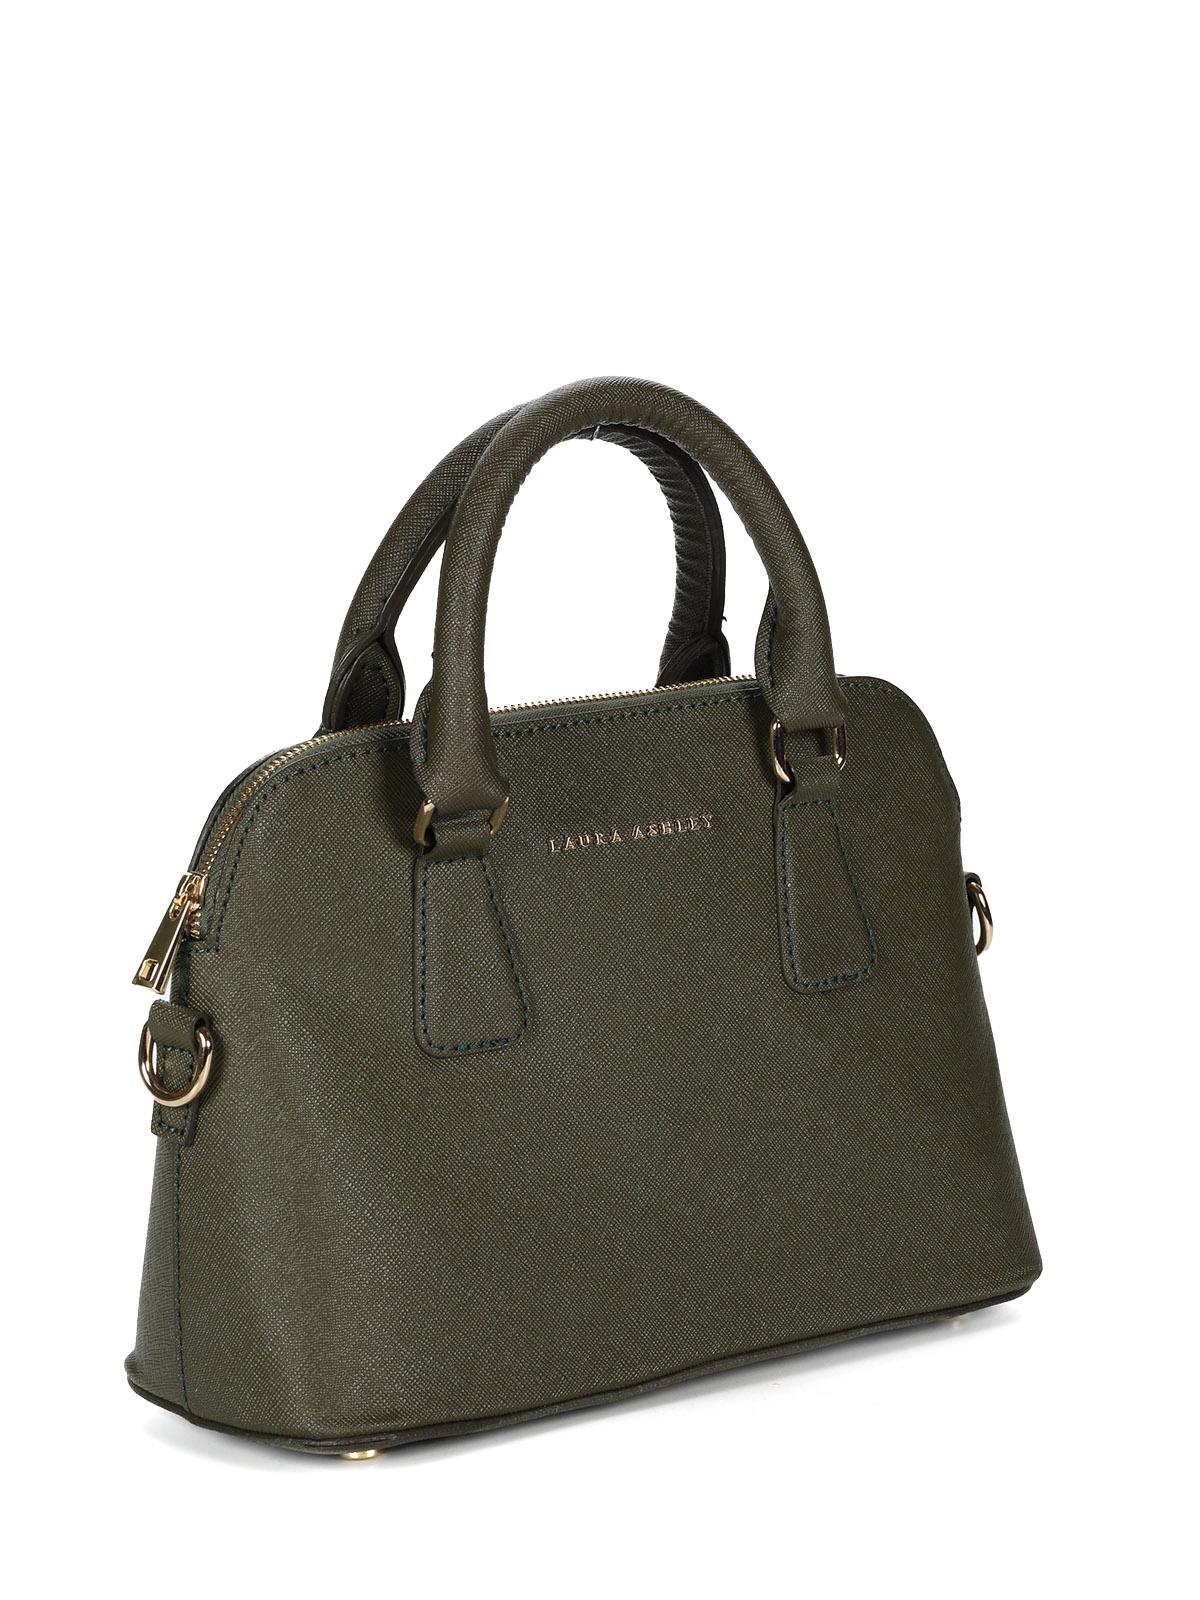 Женская сумка Laura Ashley, зеленая, цвет зеленый, размер ONE SIZE - фото 2